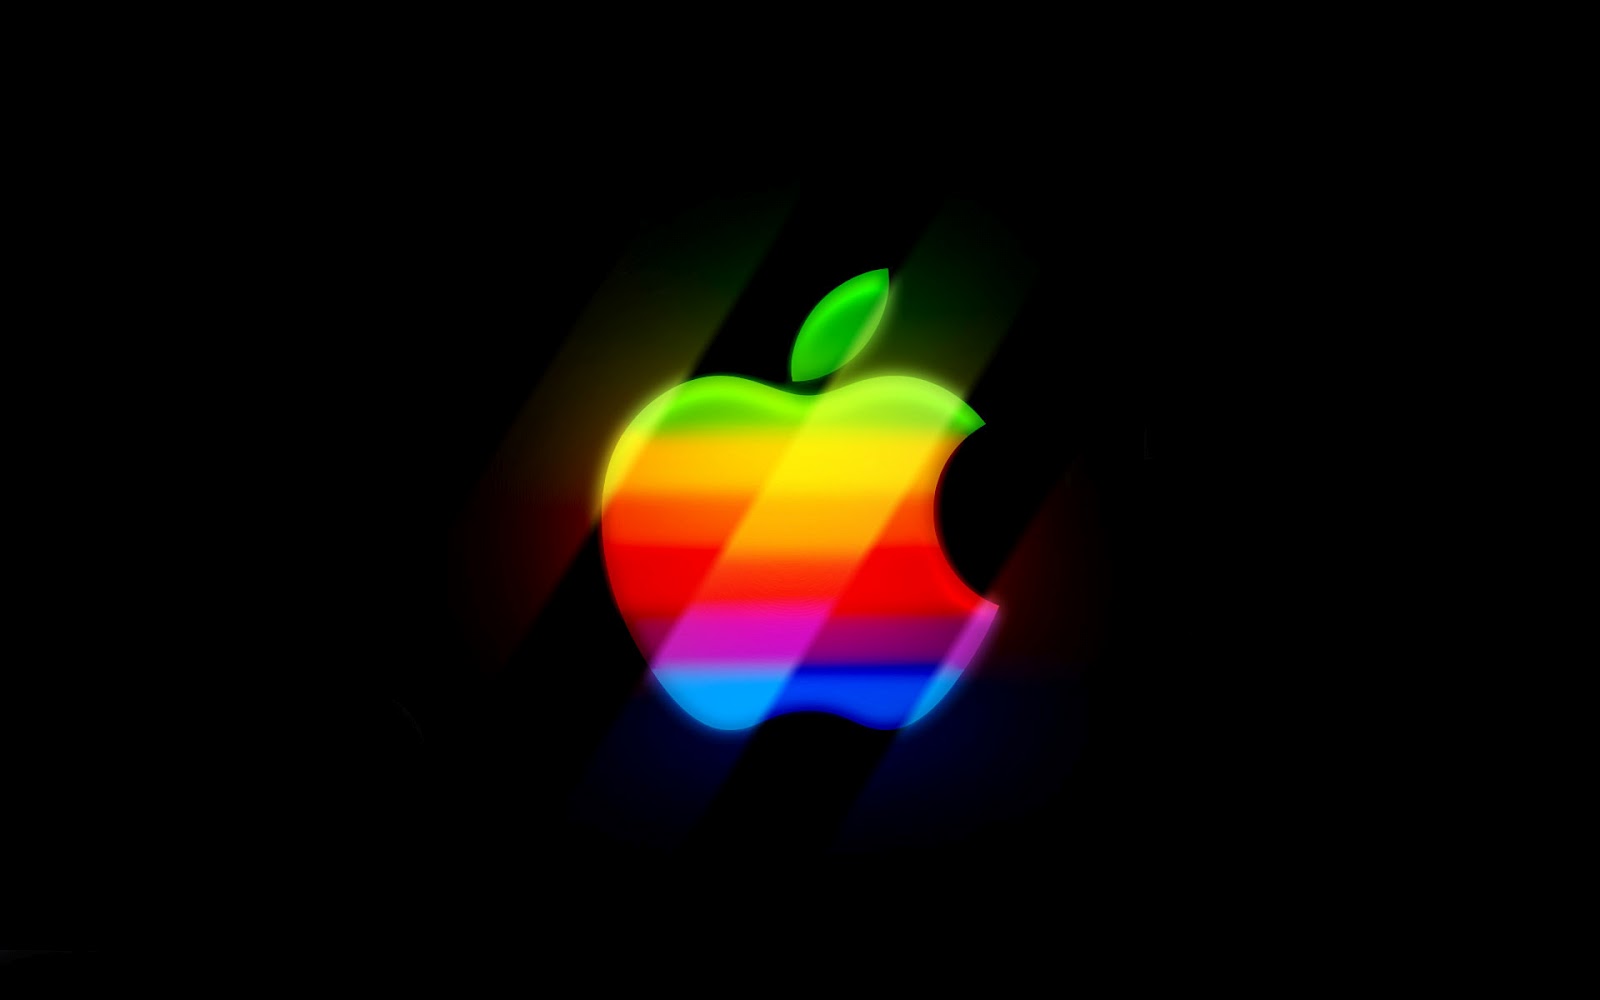 http://3.bp.blogspot.com/-hQejSwTthQk/UC6zLJvobaI/AAAAAAAAFVs/qEbNRcFDnB4/s1600/hd-zwarte-apple-wallpaper-met-gekleurde-apple-logo-hd-apple-achtergrond.jpg